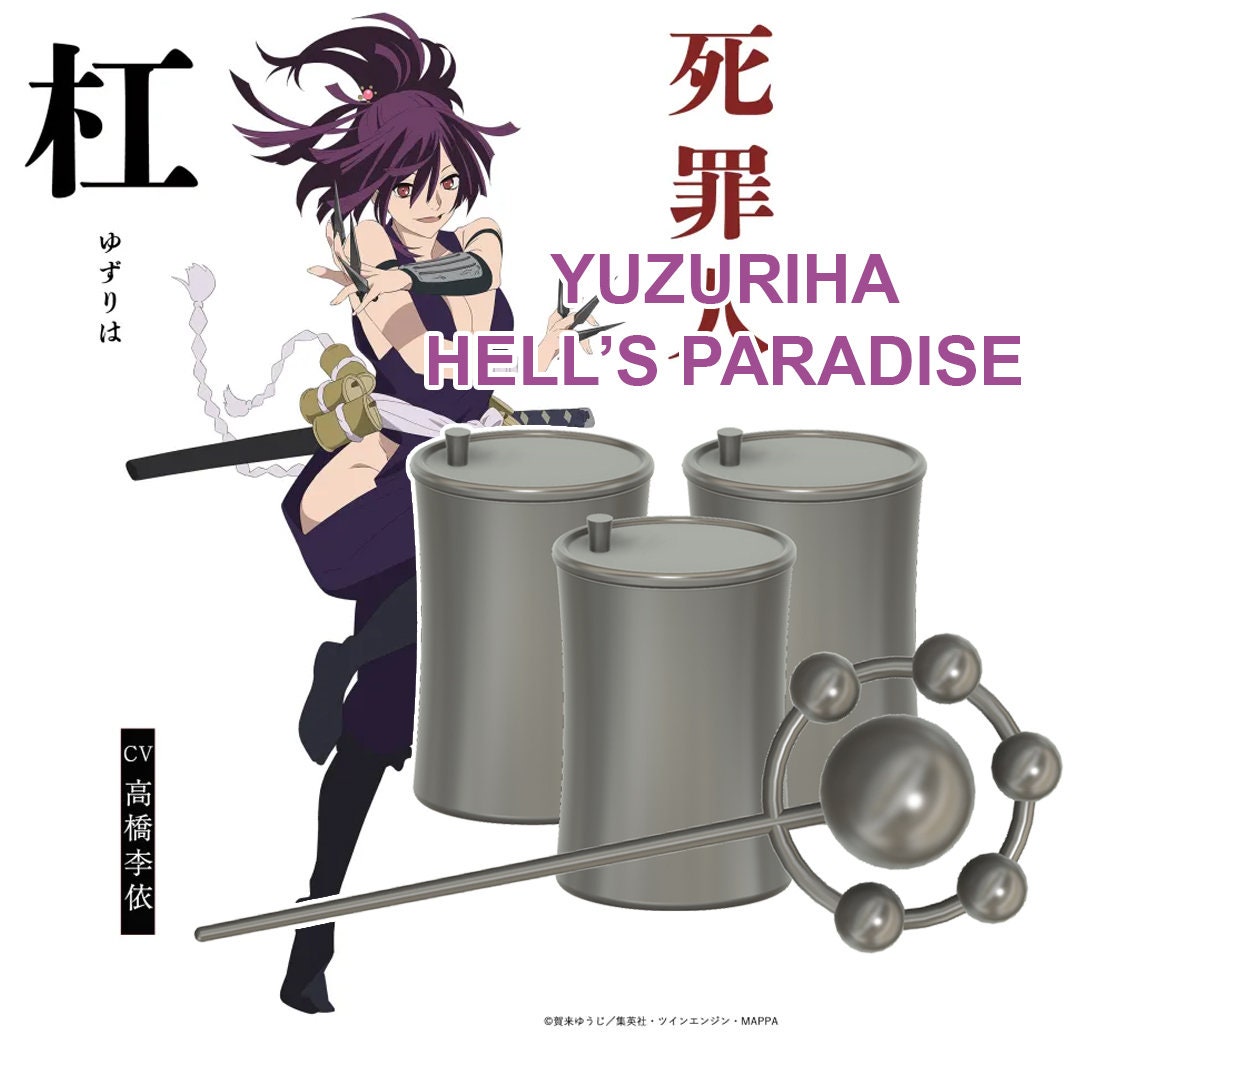 Hell's Paradise DXF-Yuzuriha